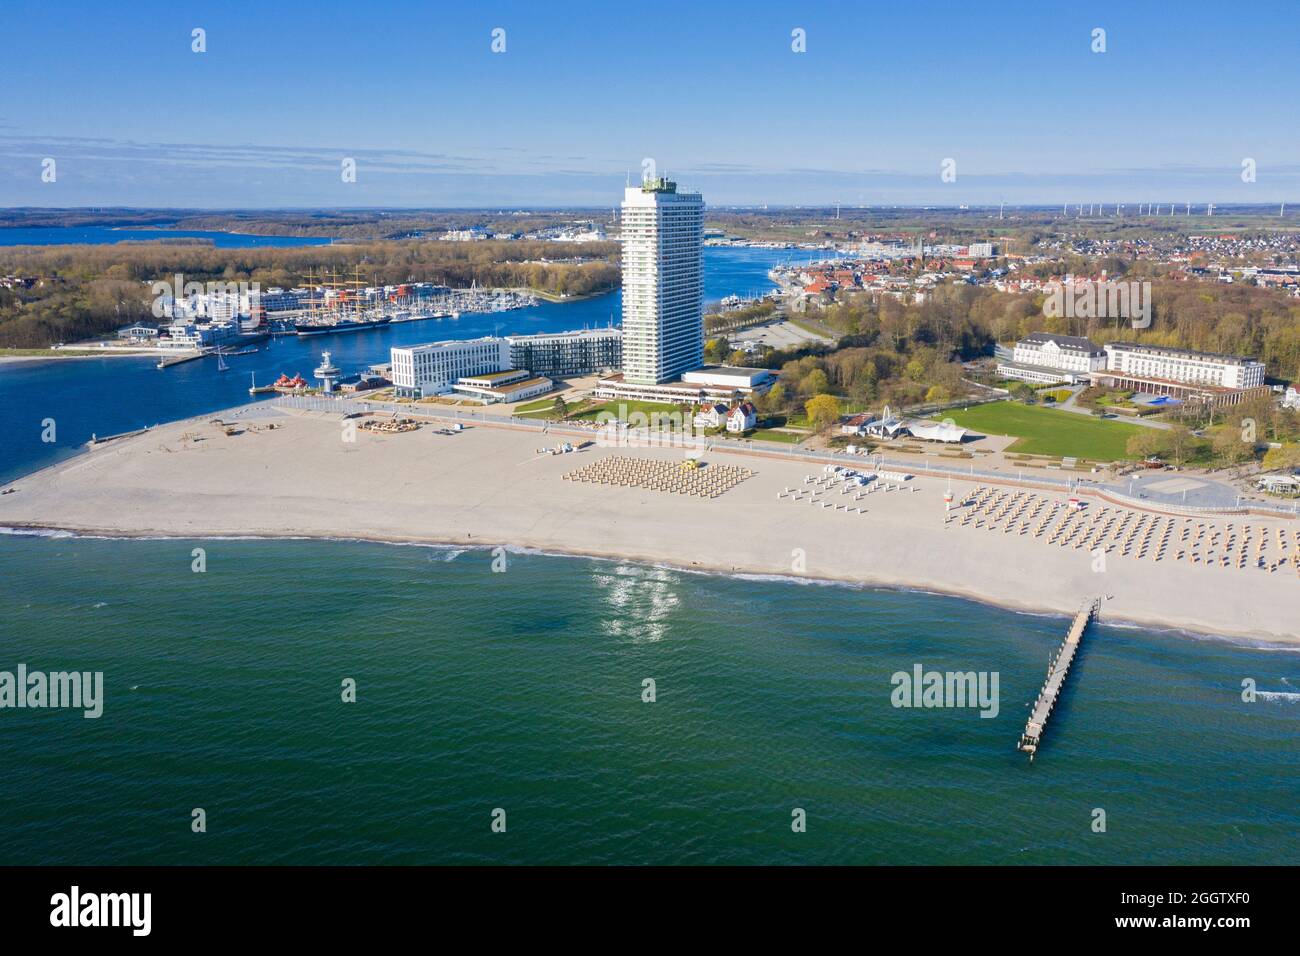 Vista aerea sulla spiaggia, il Maritim Hotel e il fiume Trave presso la località balneare di Travemünde, Hanseatic City di Lübeck, Schleswig-Holstein, Germania Foto Stock